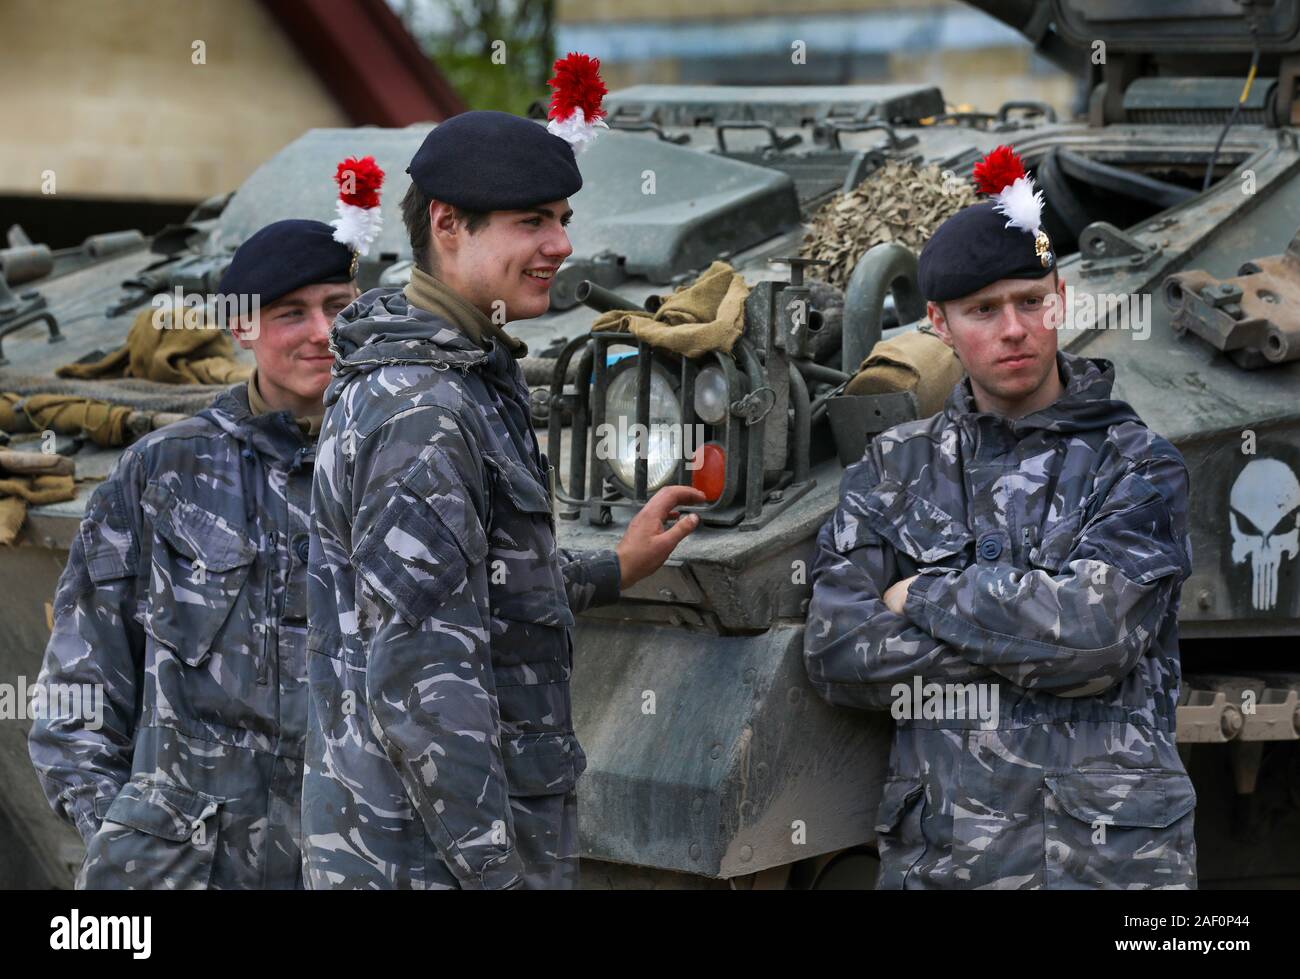 Régiment royal de fusiliers de l'équipage d'un véhicule blindé de combat guerrier Banque D'Images